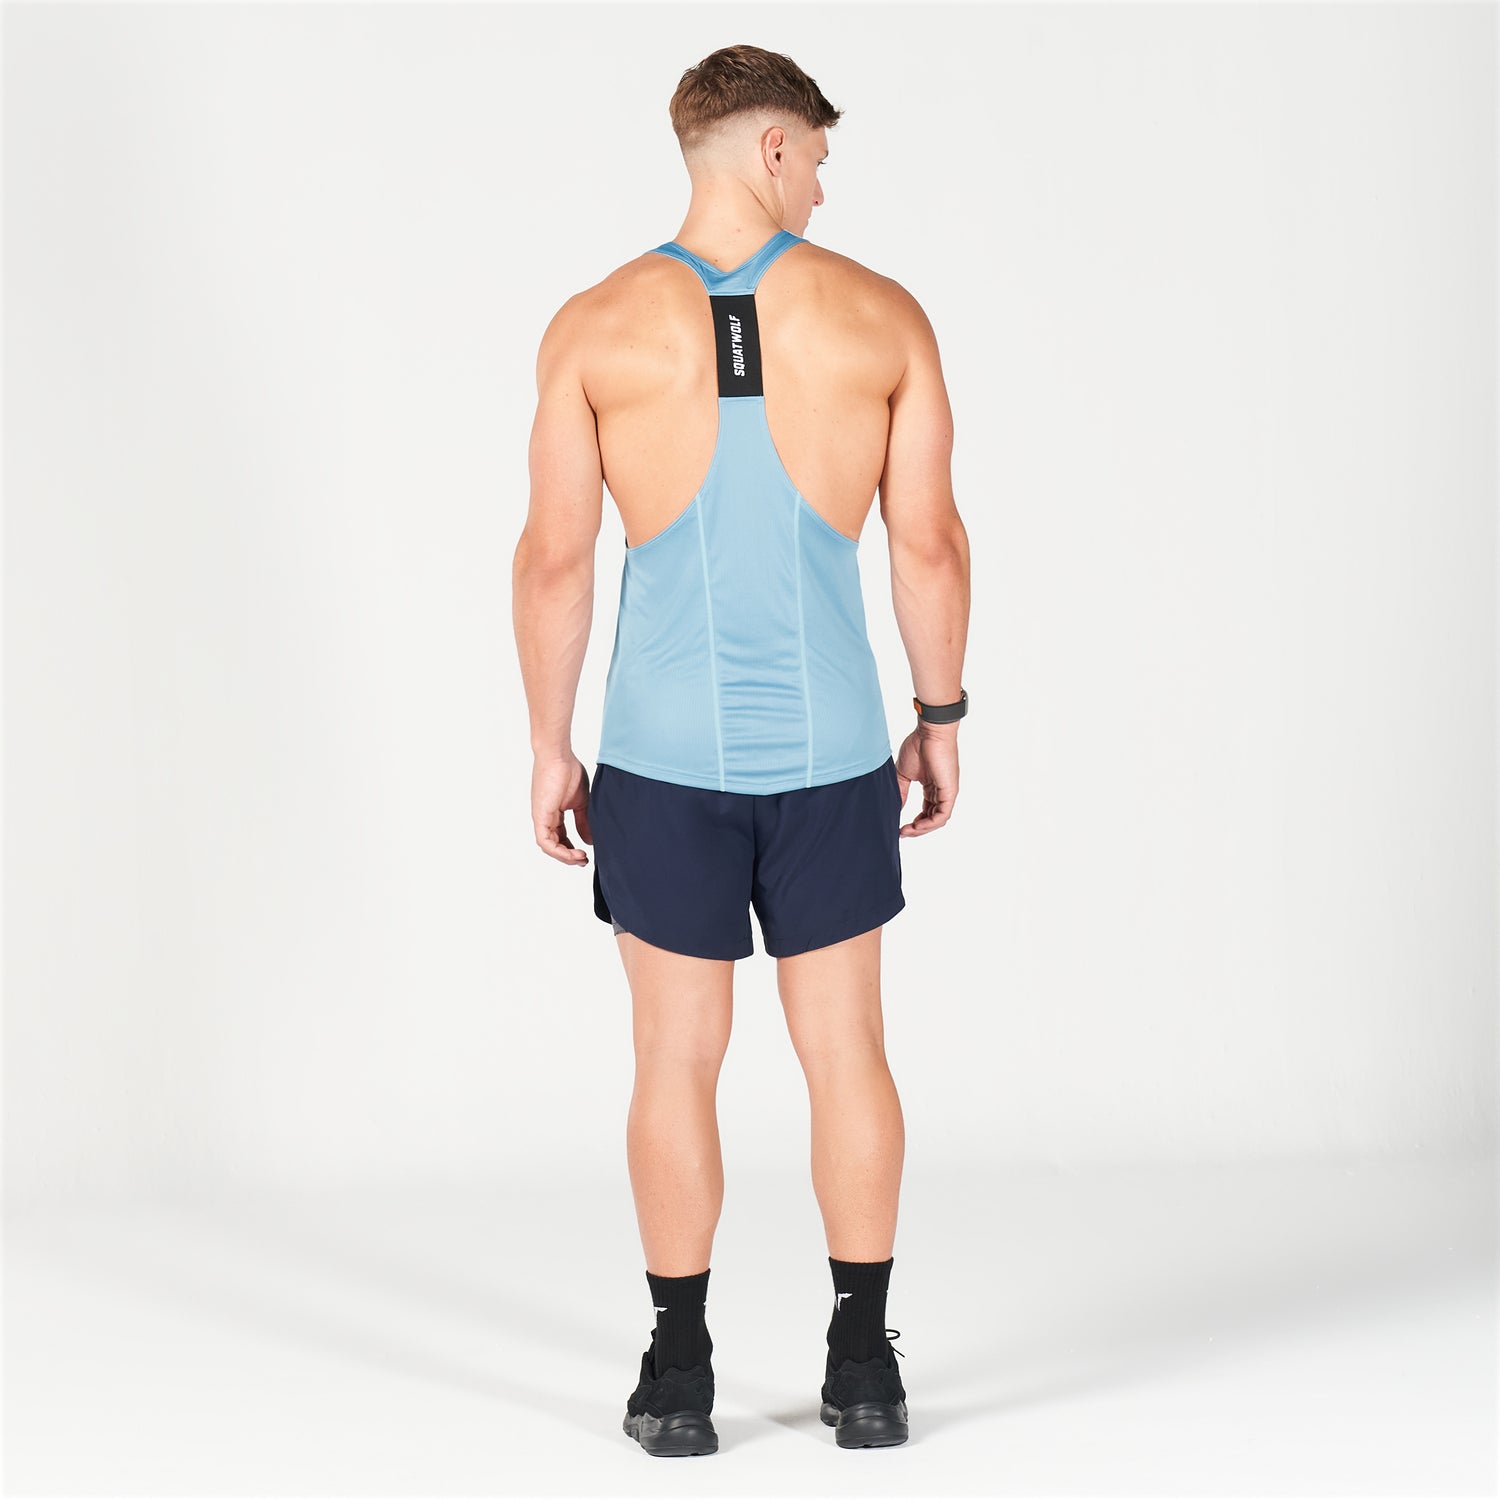 squatwolf-gym-wear-next-gen-hypercool-stringer-delph-blue-stringer-vests-for-men